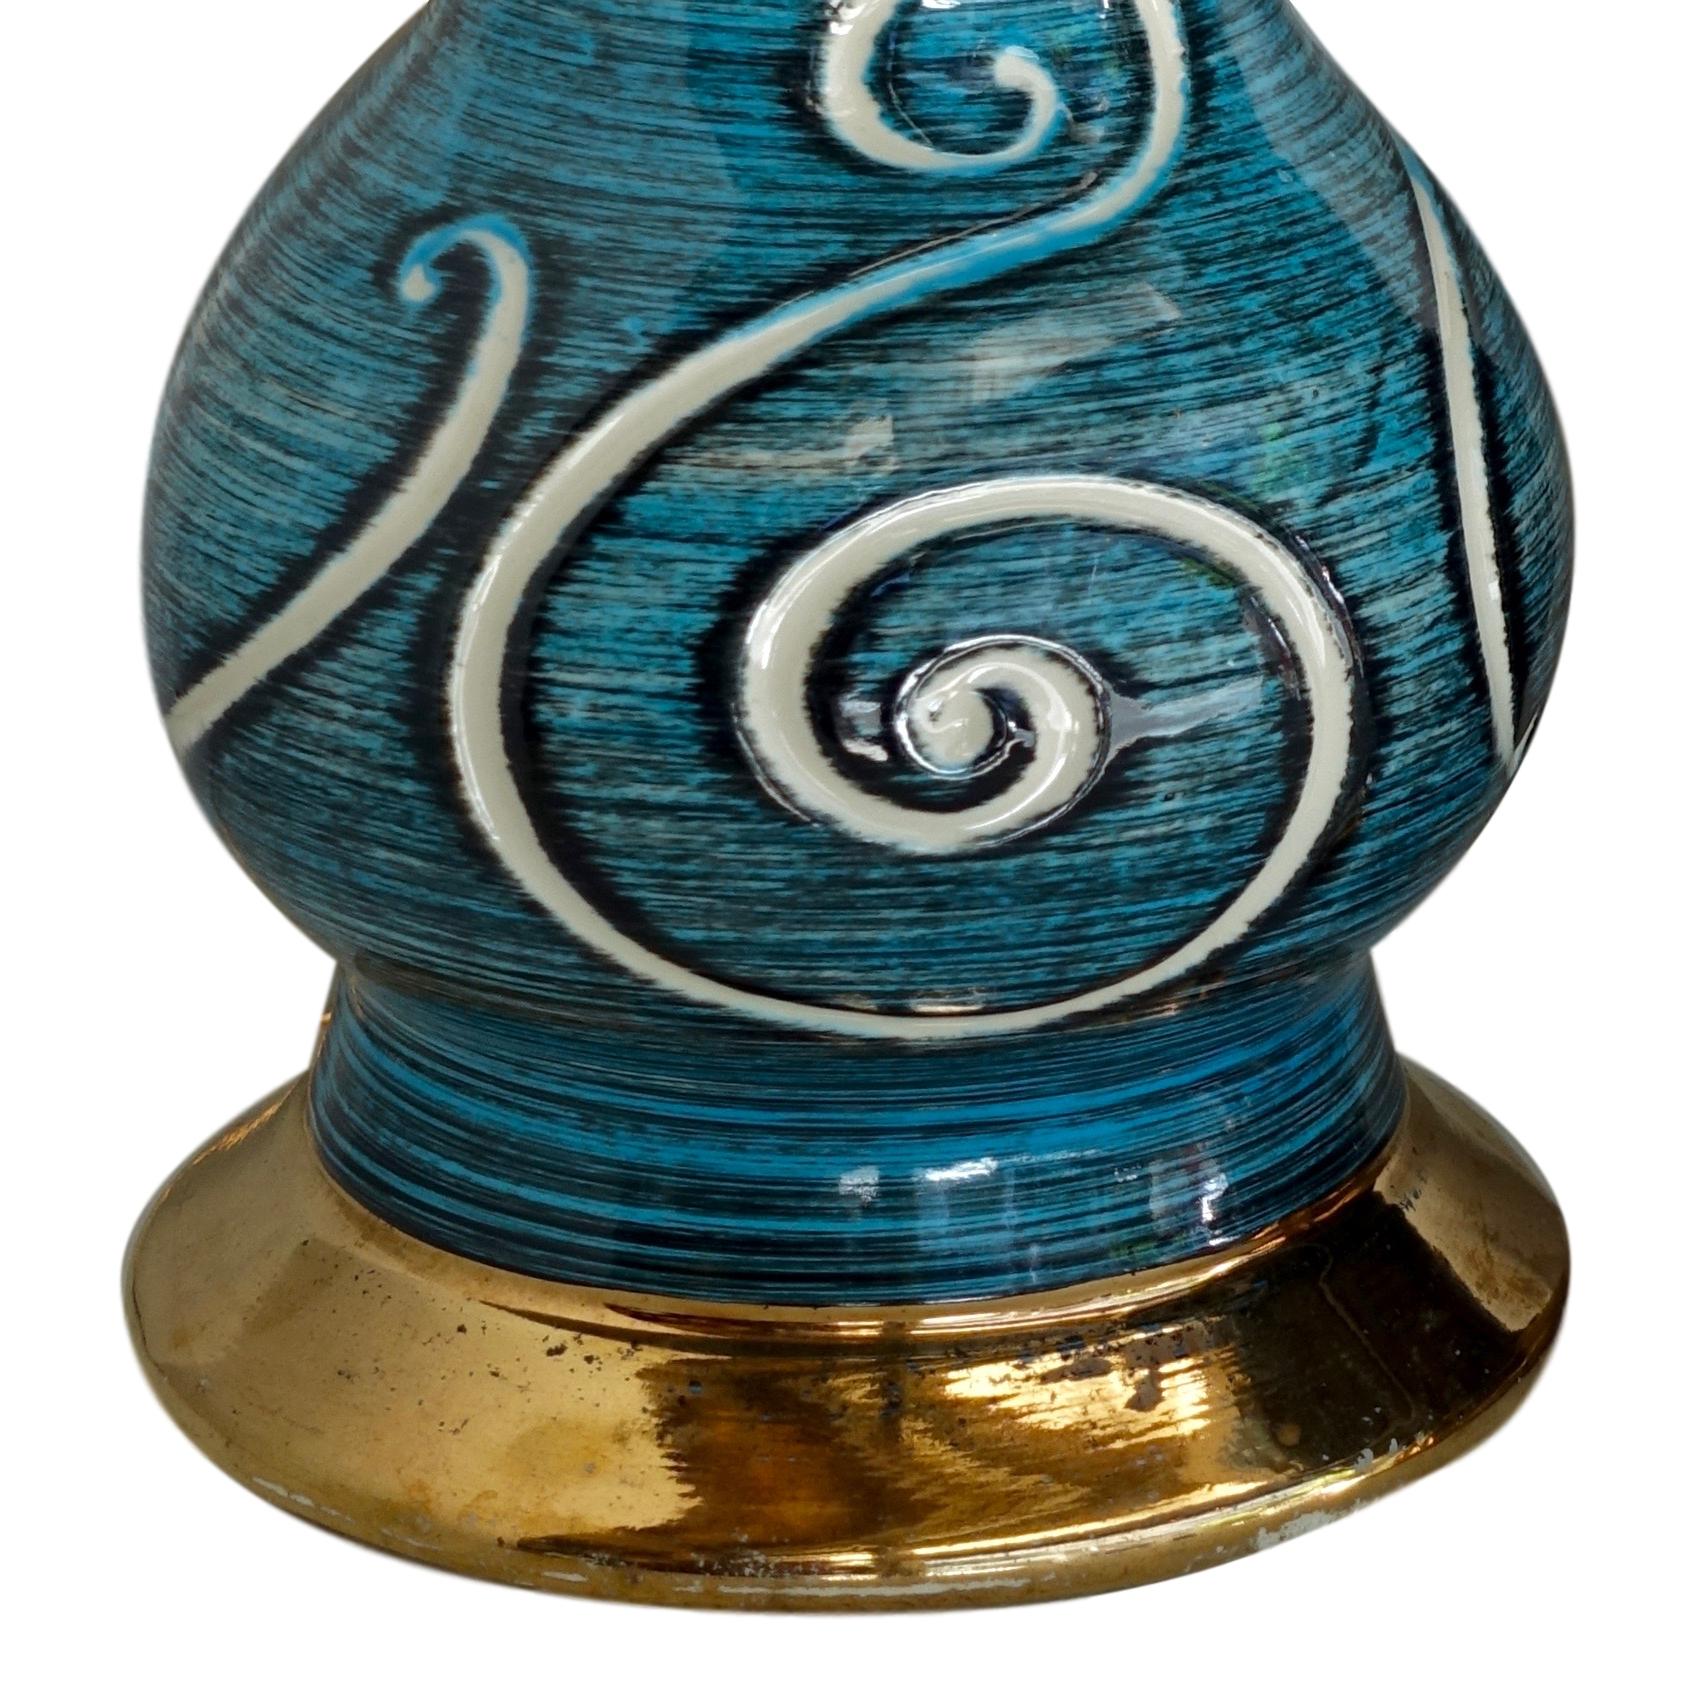 Une paire de lampes de table en porcelaine française datant des années 1950, avec un motif de volutes sur des bases en glaçure bleue et dorée.

Mesures :
Hauteur du corps : 16
Diamètre (au plus large) : 6,75